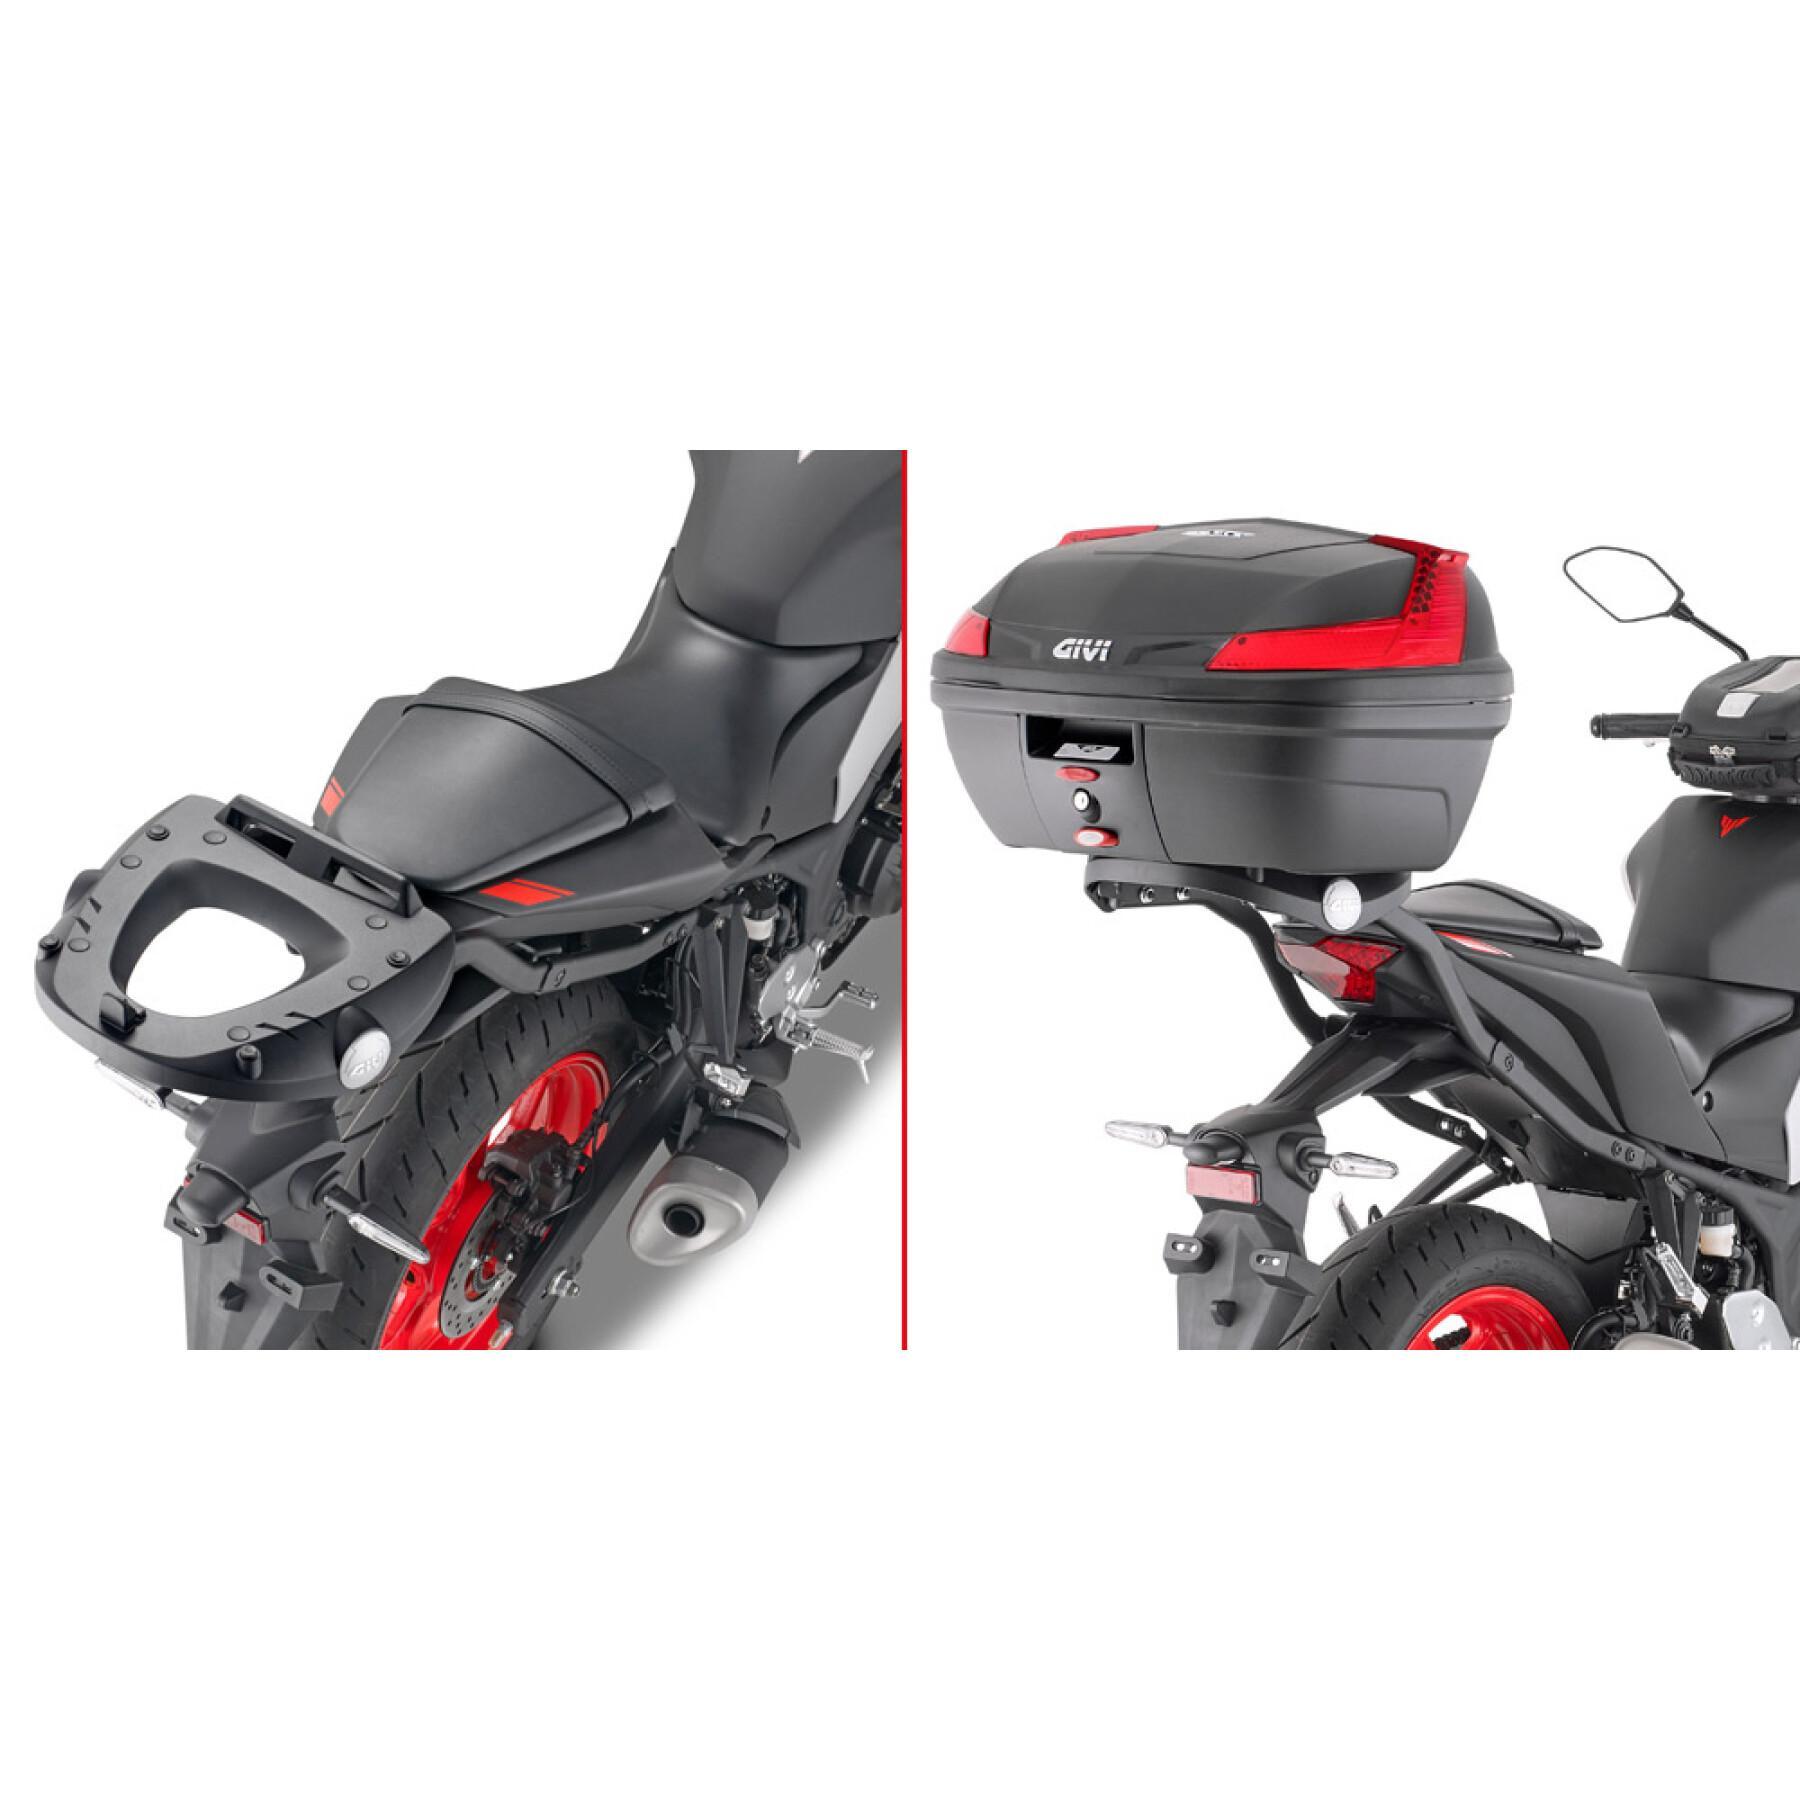 Supporto bauletto della moto Givi Monolock Yamaha MT 03 321 (20)